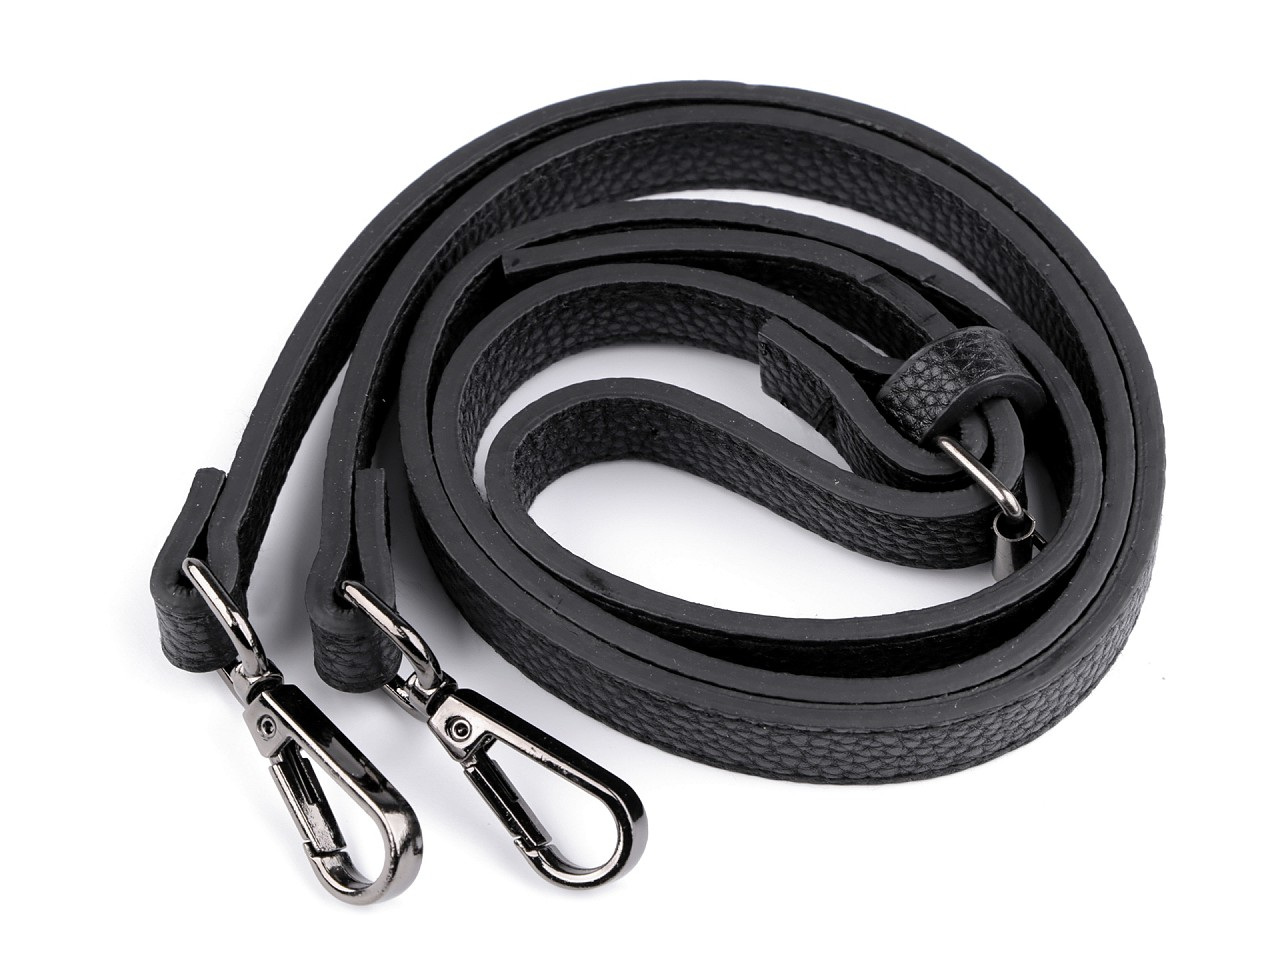 Koženkový popruh / ucho na kabelku s karabinami šíře 1,5 cm, barva 3 černá černý nikl